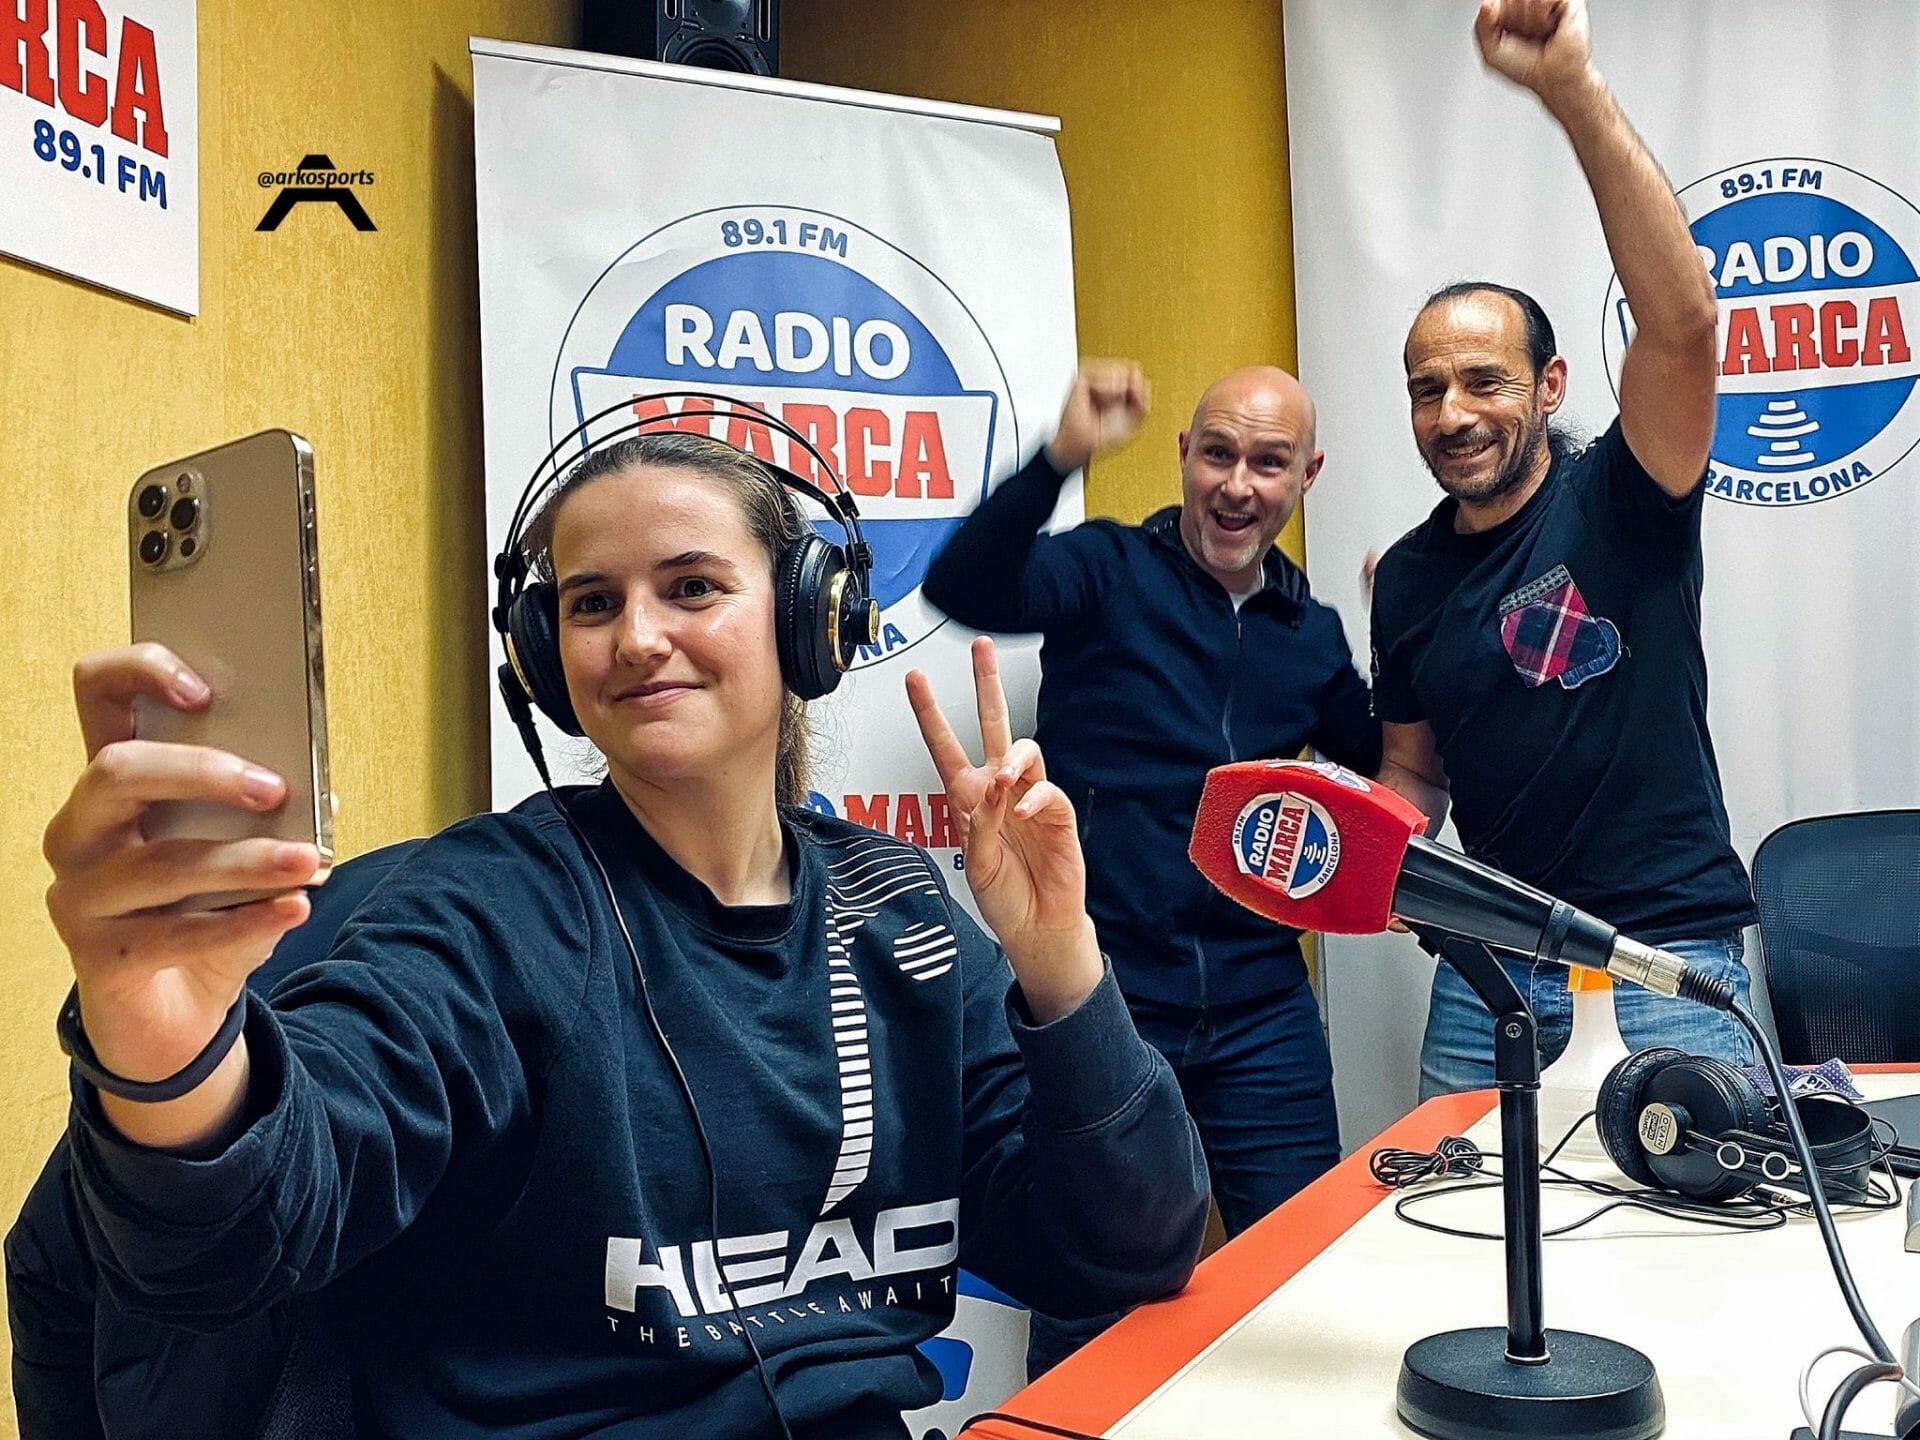 Superioridad Objetivo encerrar La número 1 del mundo, Ari Sánchez, en nuestra pista - Radio Marca Barcelona